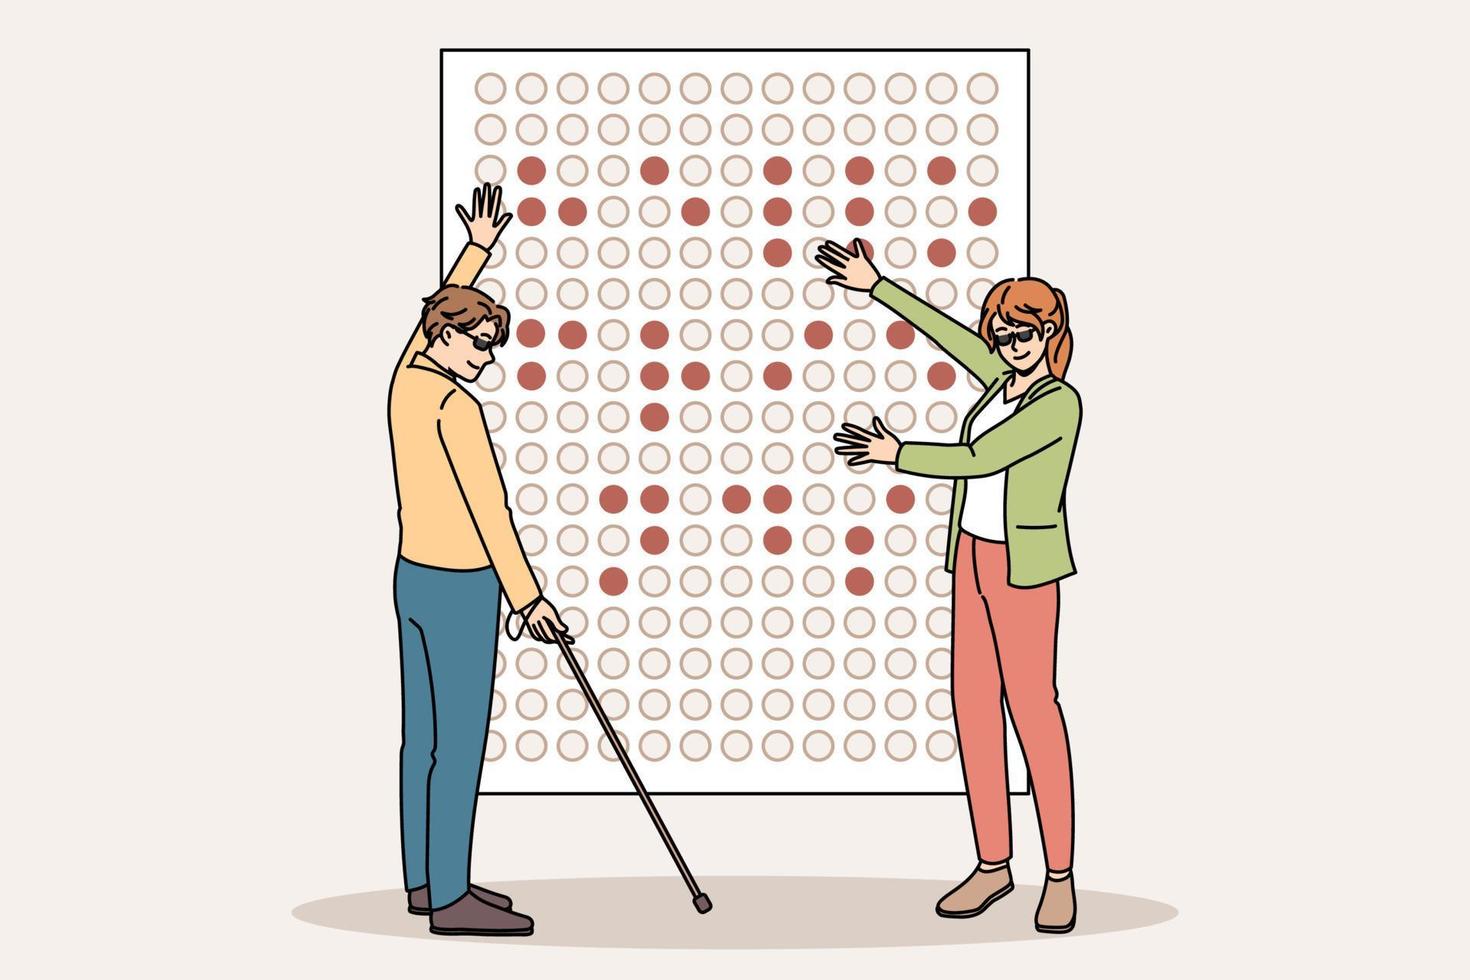 cegos aprendem o alfabeto braille a bordo na escola juntos. homem e mulher se comunicam ler usar símbolos linguagem de sinais. ilustração vetorial plana. vetor